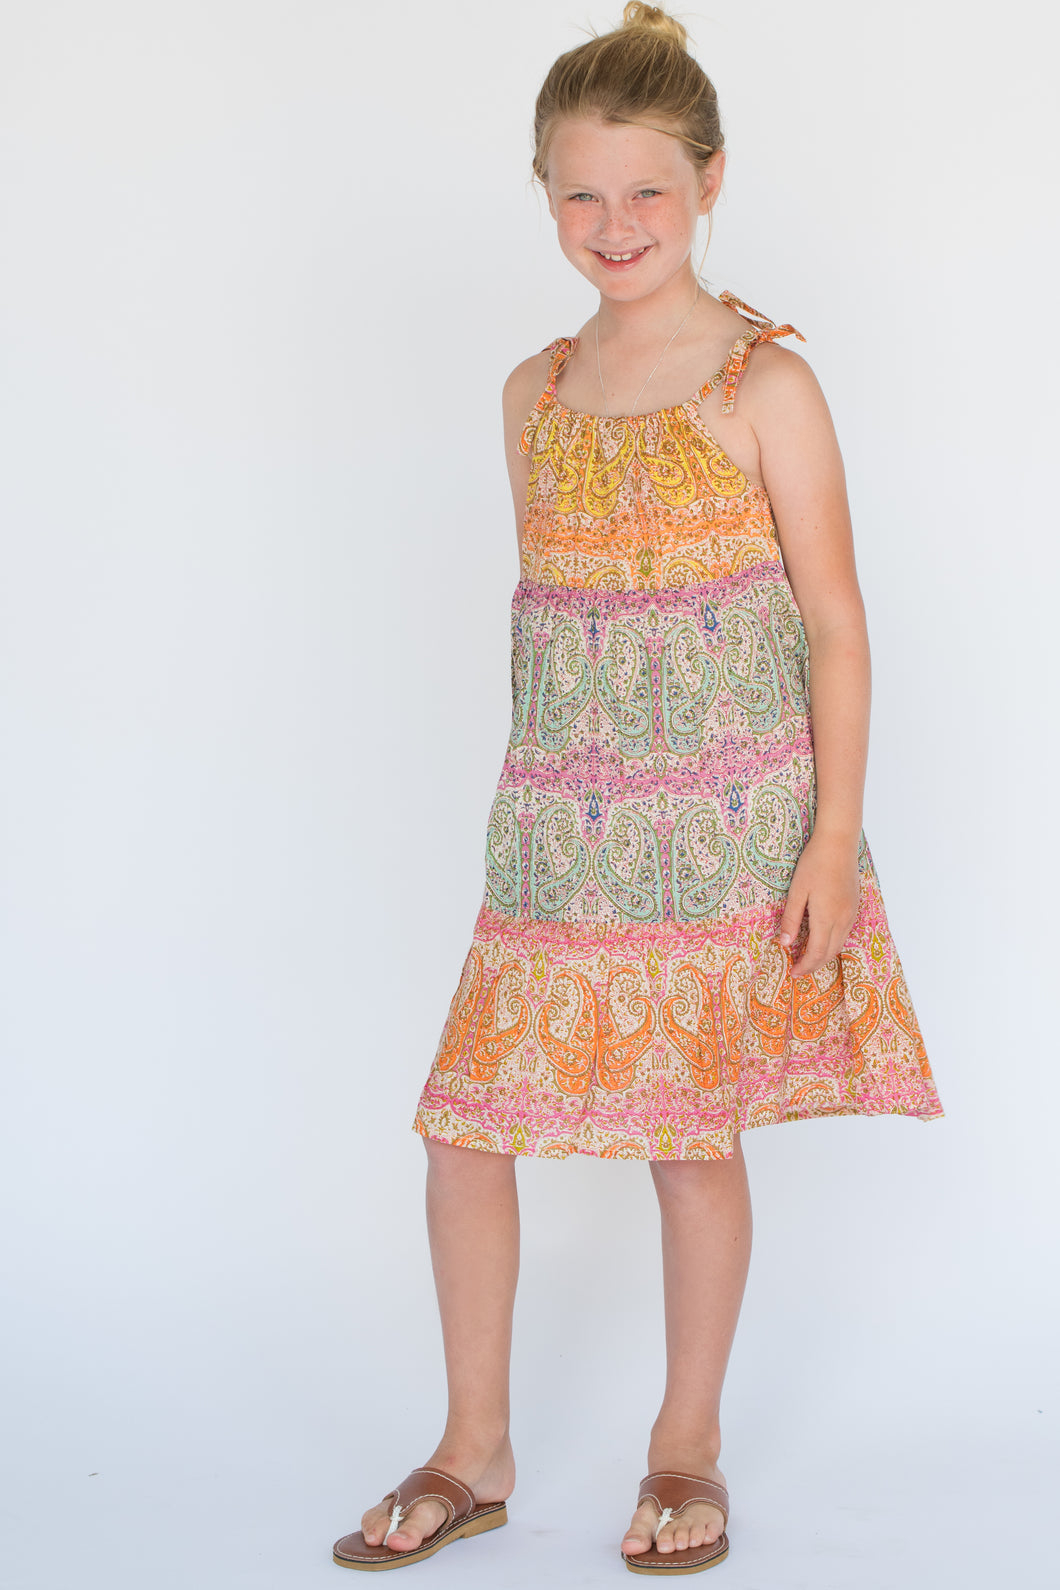 Multicolor Paisley Shoulder-Tie Dress - Kids Wholesale Boutique Clothing, Dress - Girls Dresses, Yo Baby Wholesale - Yo Baby